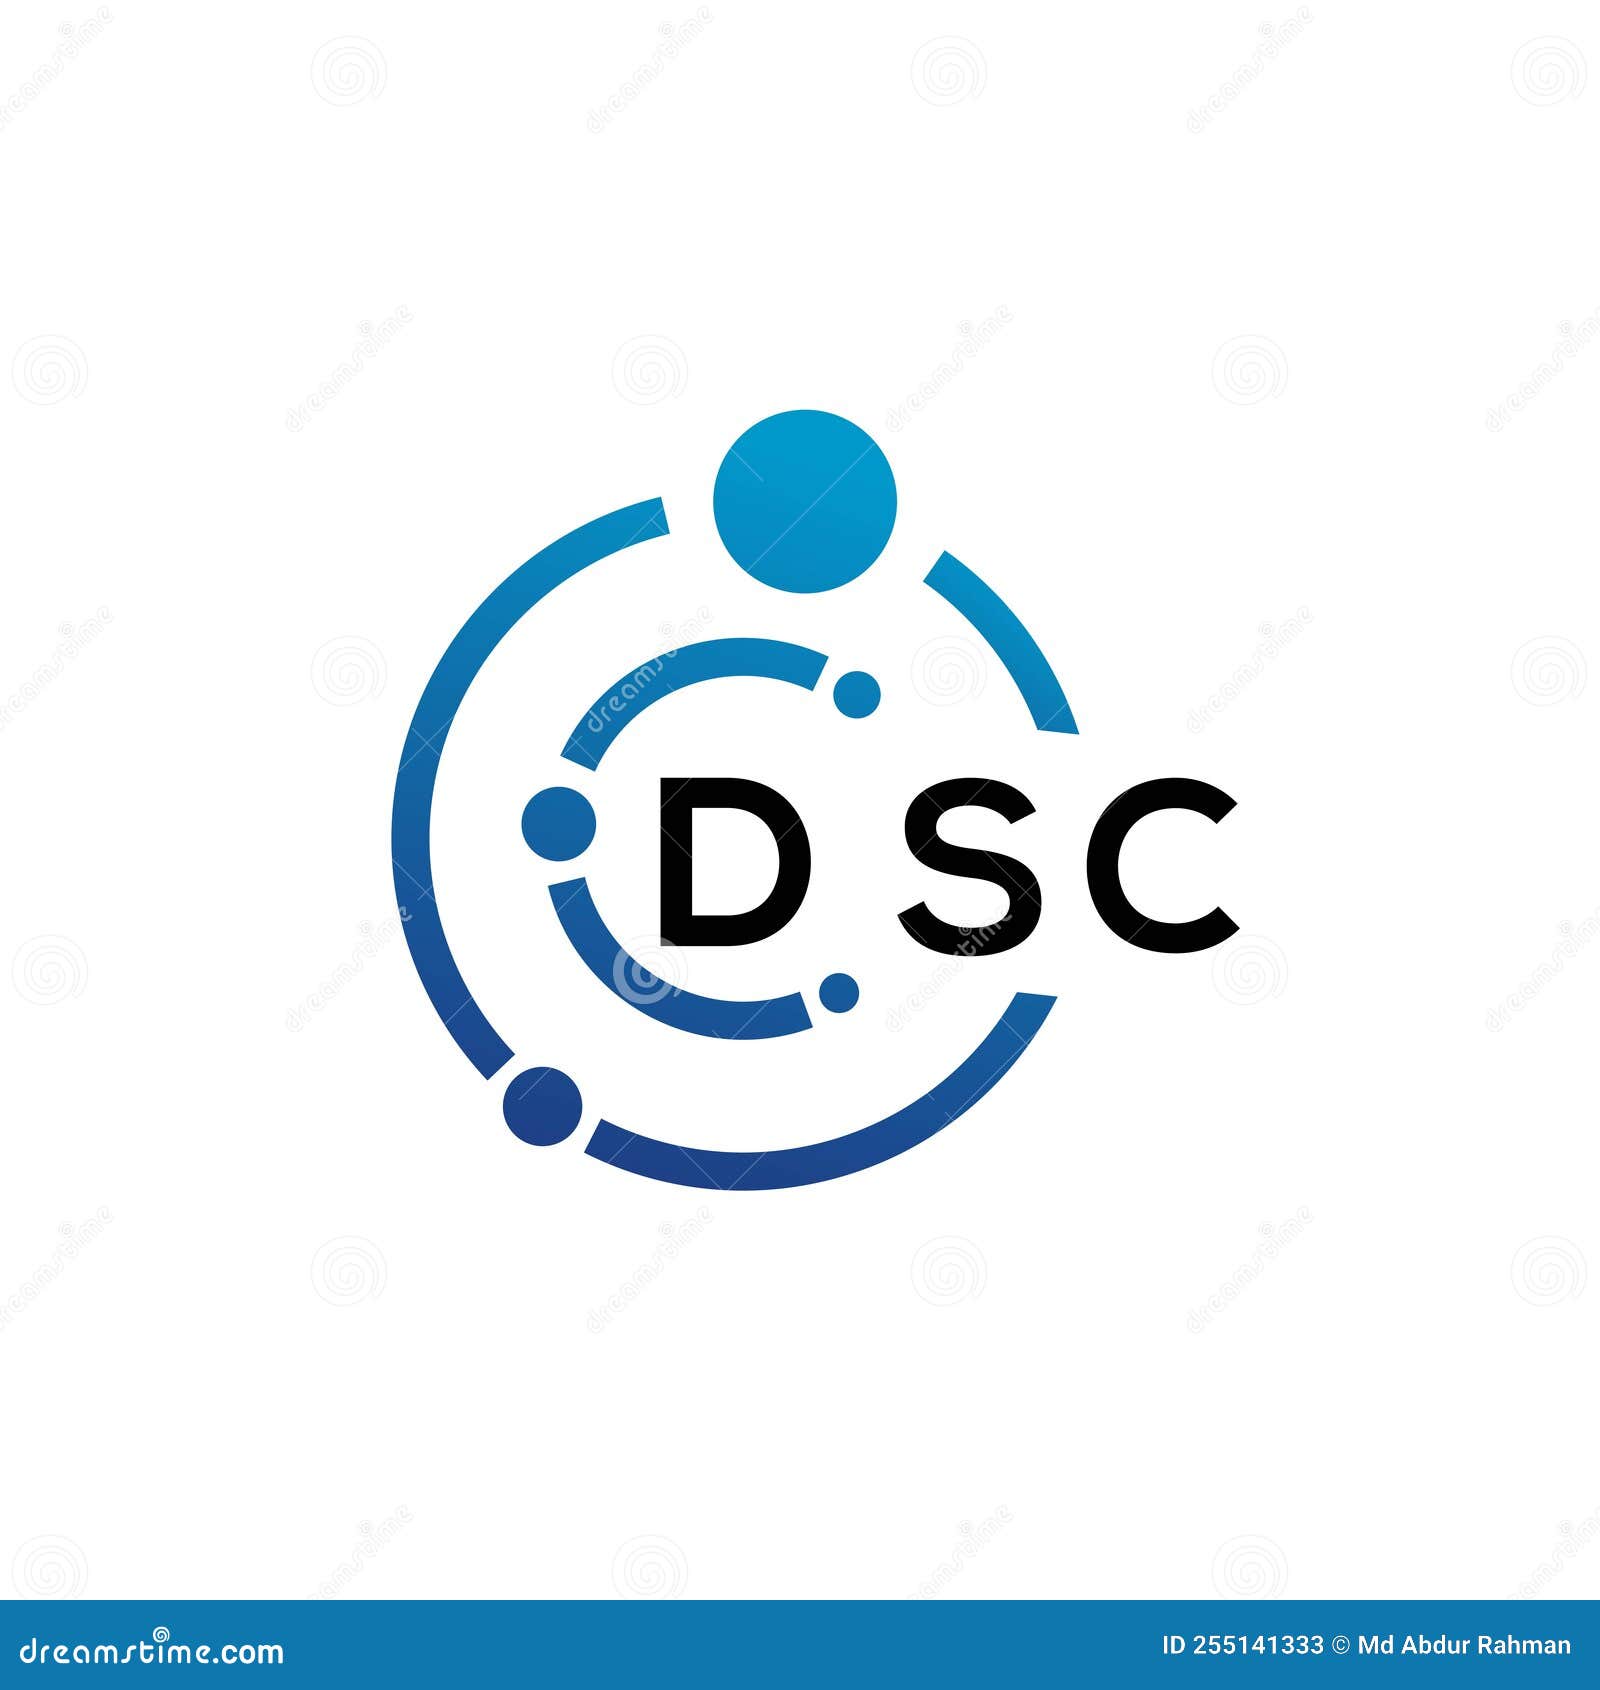 dsc letter logo  on white background. dsc creative initials letter logo concept. dsc letter 